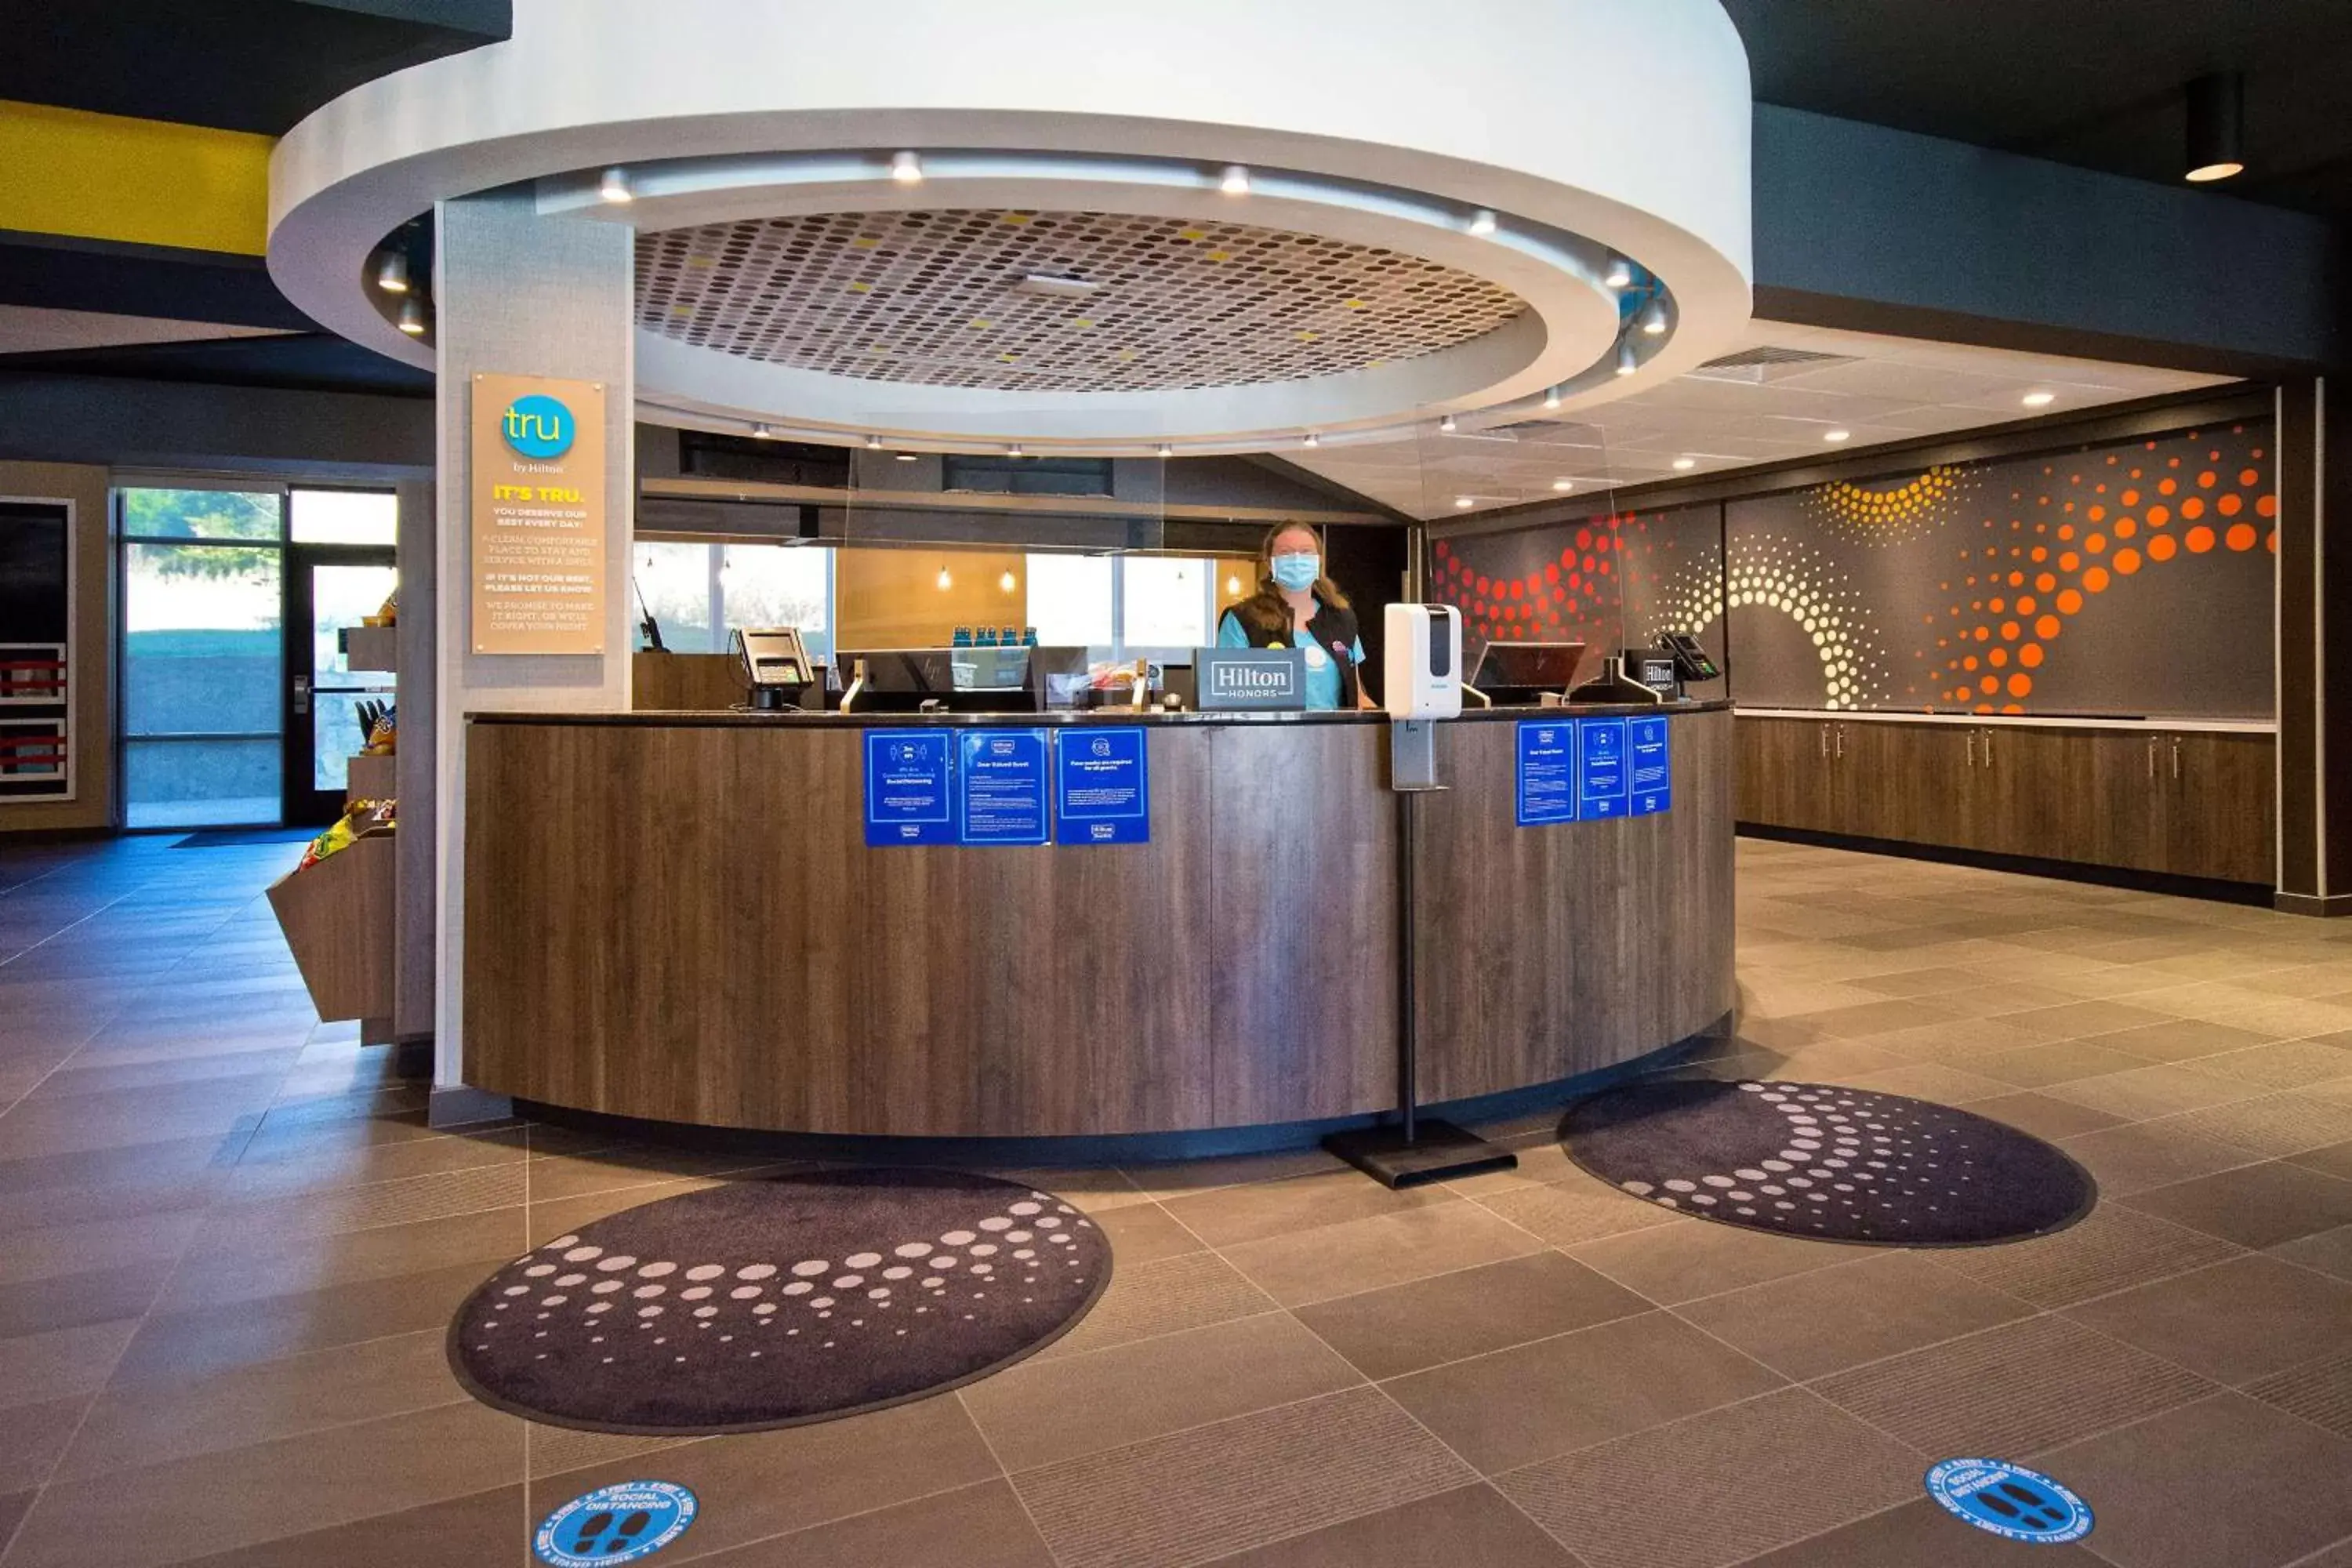 Lobby or reception, Lobby/Reception in Tru By Hilton Rockwall Dallas, Tx